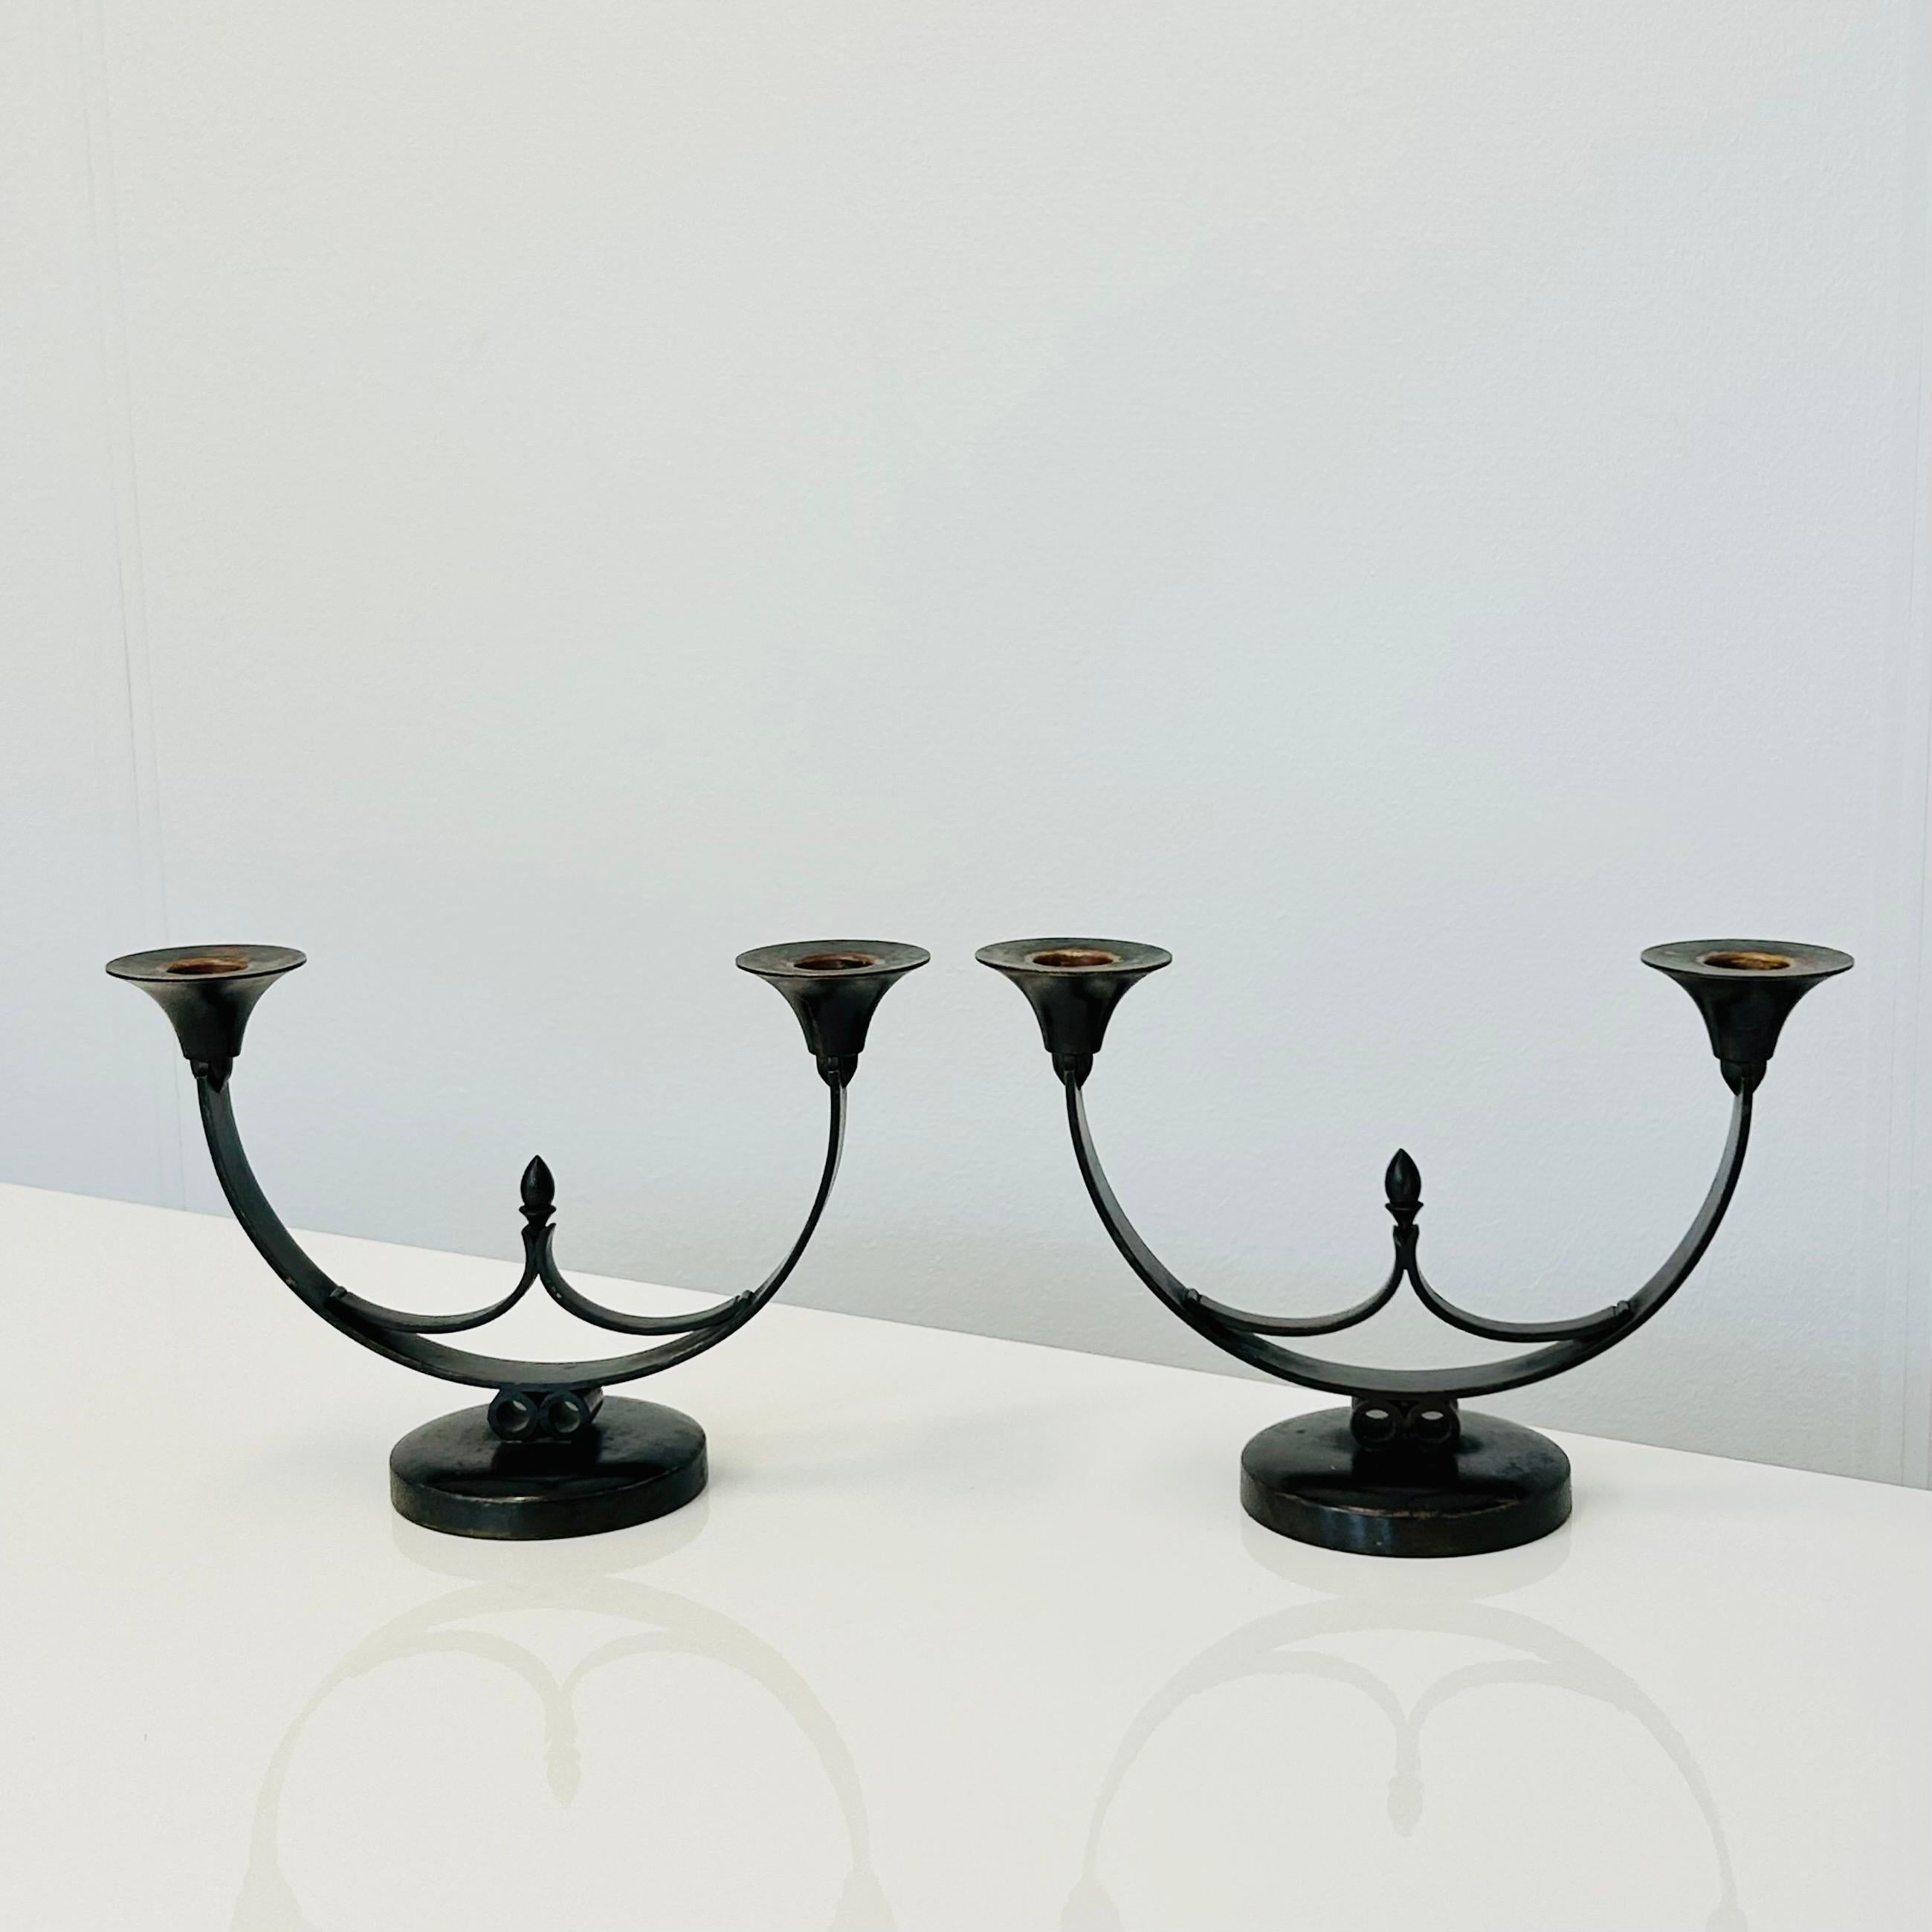 Ein bemerkenswertes Paar Kerzenhalter aus Bronze, entworfen von dem bekannten Künstler Just Andersen in den 1930er Jahren. Diese exquisiten Kerzenhalter, Modell LB 1941, sind ein Zeugnis für Andersens künstlerische Brillanz. Ihr zeitloses Design